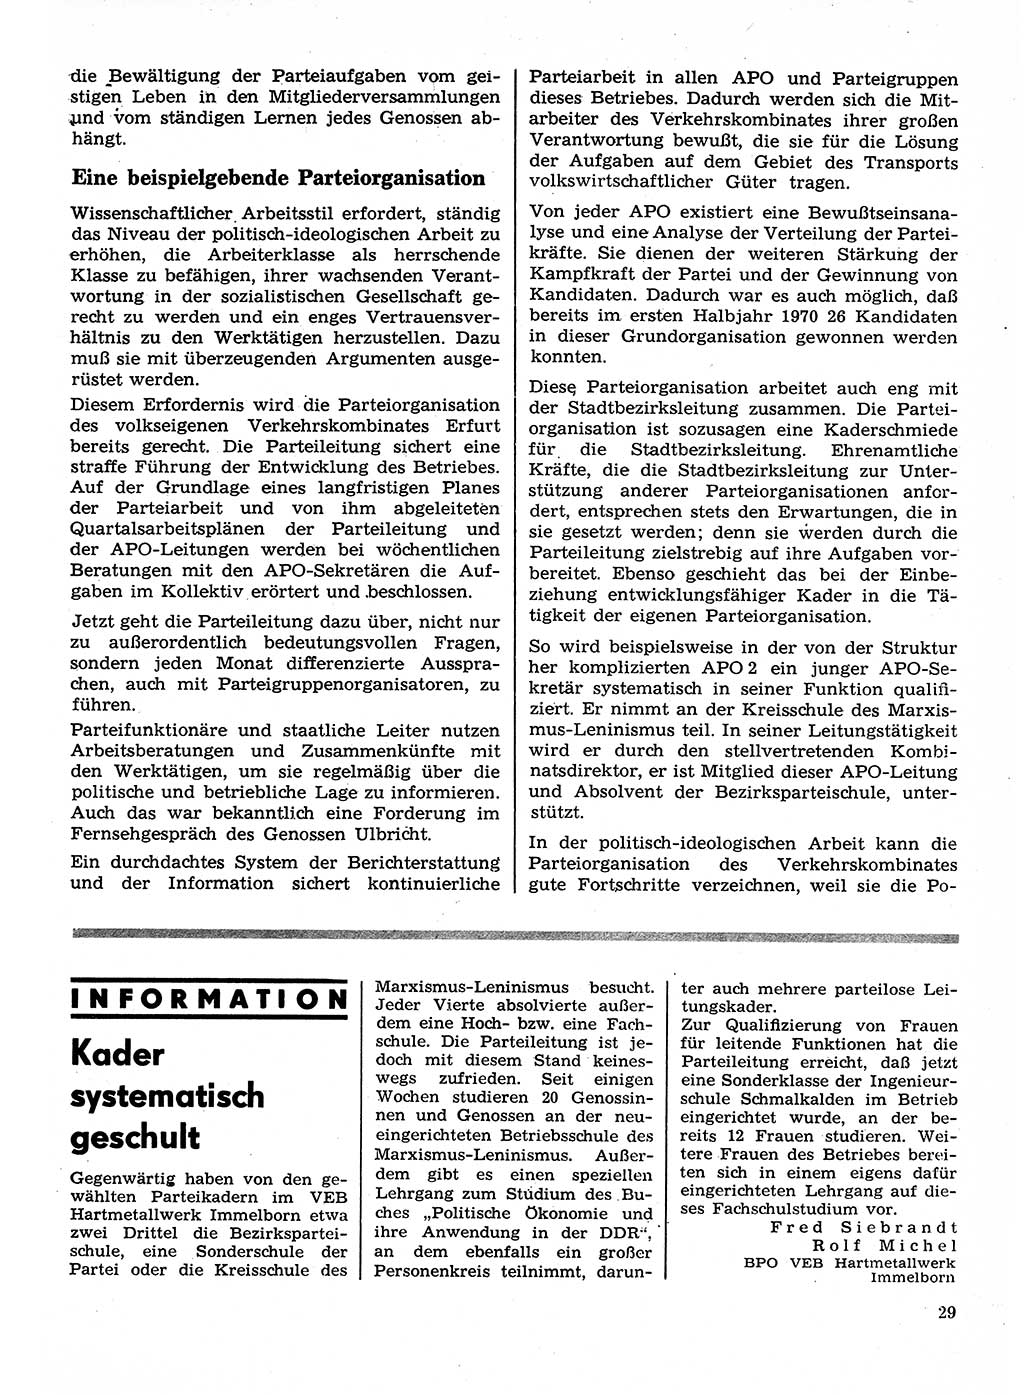 Neuer Weg (NW), Organ des Zentralkomitees (ZK) der SED (Sozialistische Einheitspartei Deutschlands) für Fragen des Parteilebens, 26. Jahrgang [Deutsche Demokratische Republik (DDR)] 1971, Seite 29 (NW ZK SED DDR 1971, S. 29)